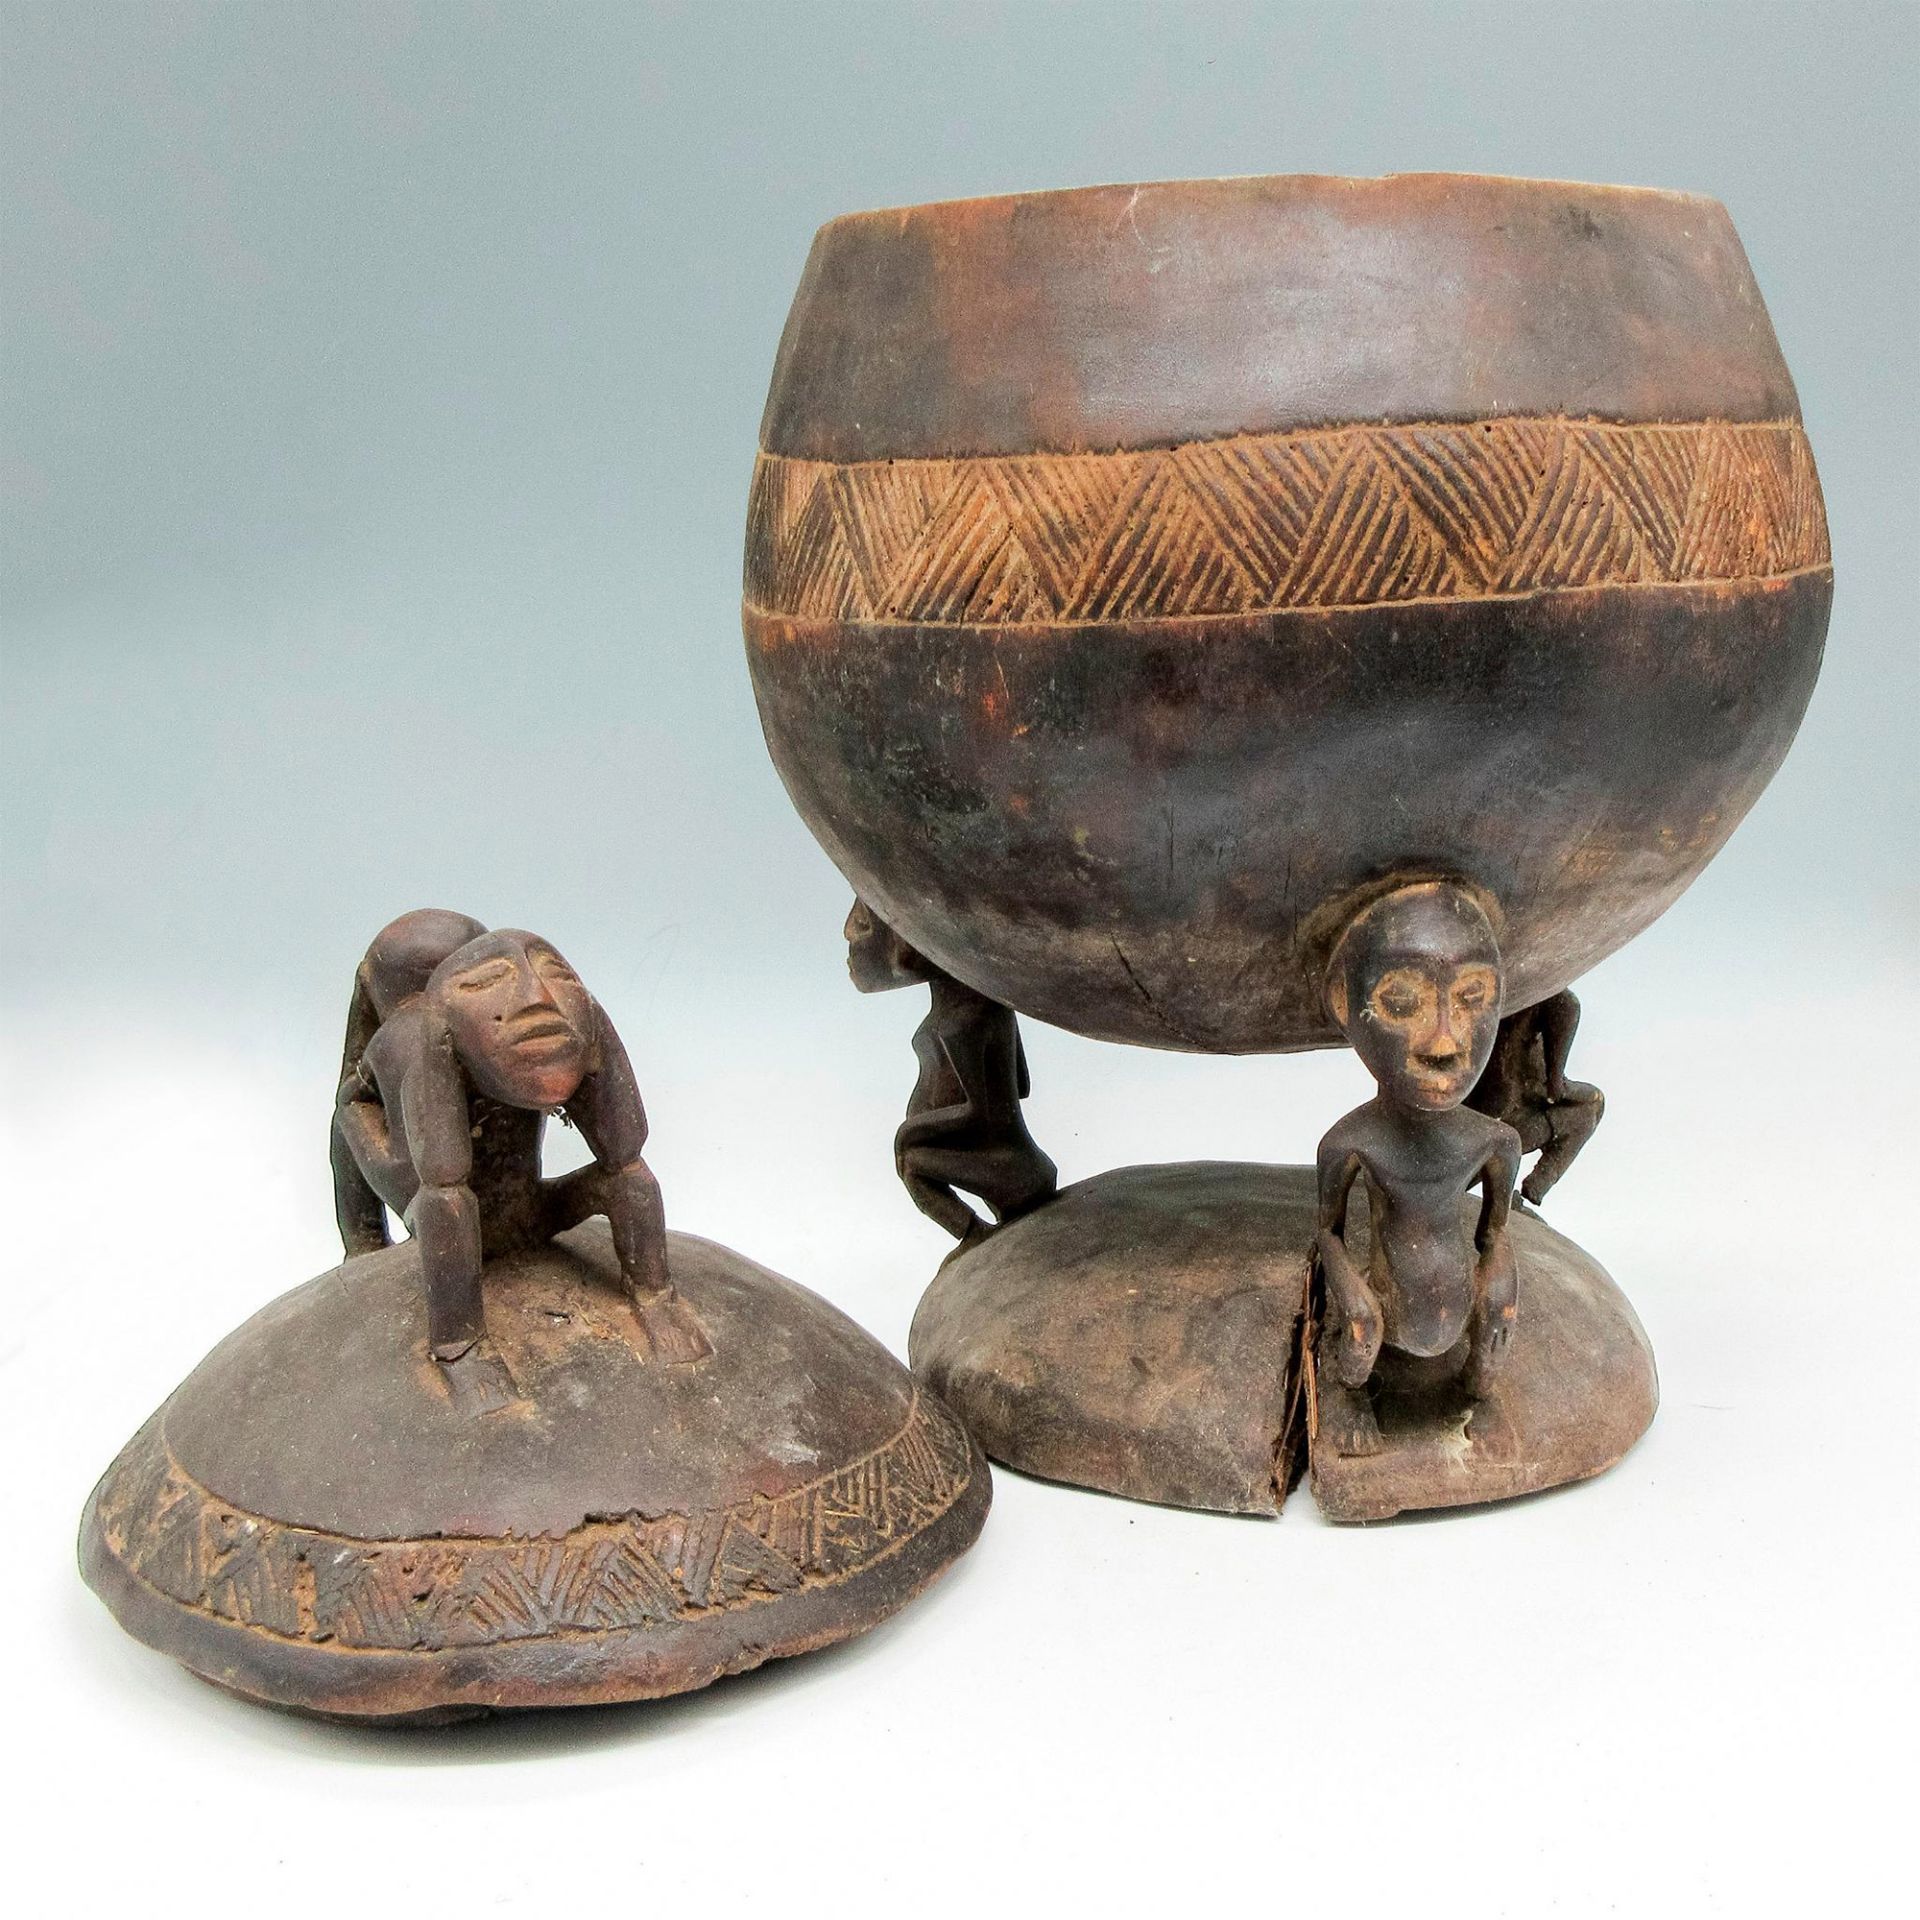 Vintage African Carved Wooden Lidded Medicine Bowl - Image 3 of 4